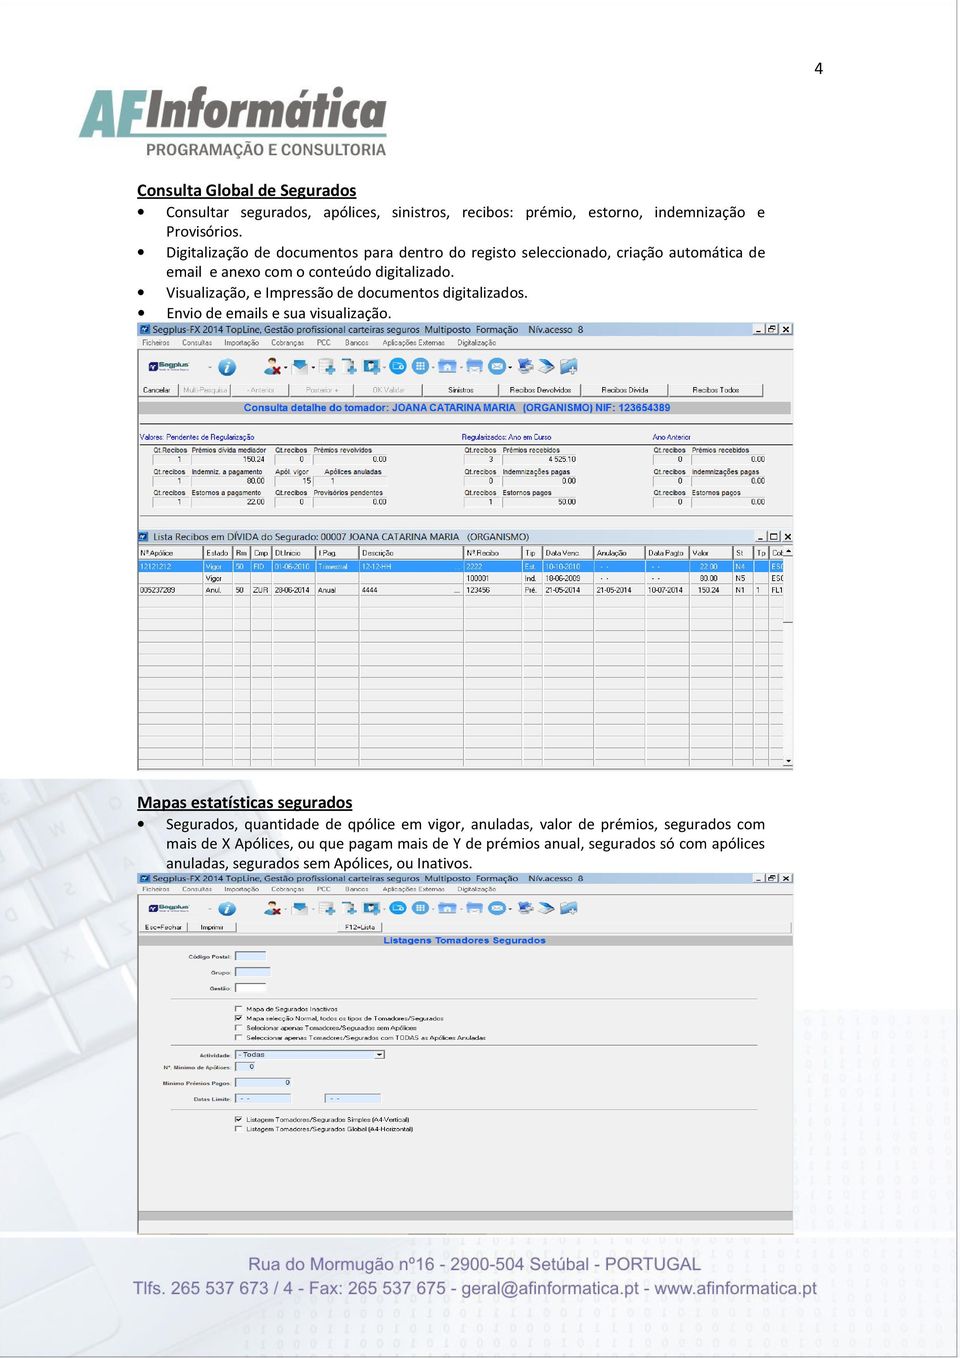 Visualização, e Impressão de documentos digitalizados. Envio de emails e sua visualização.